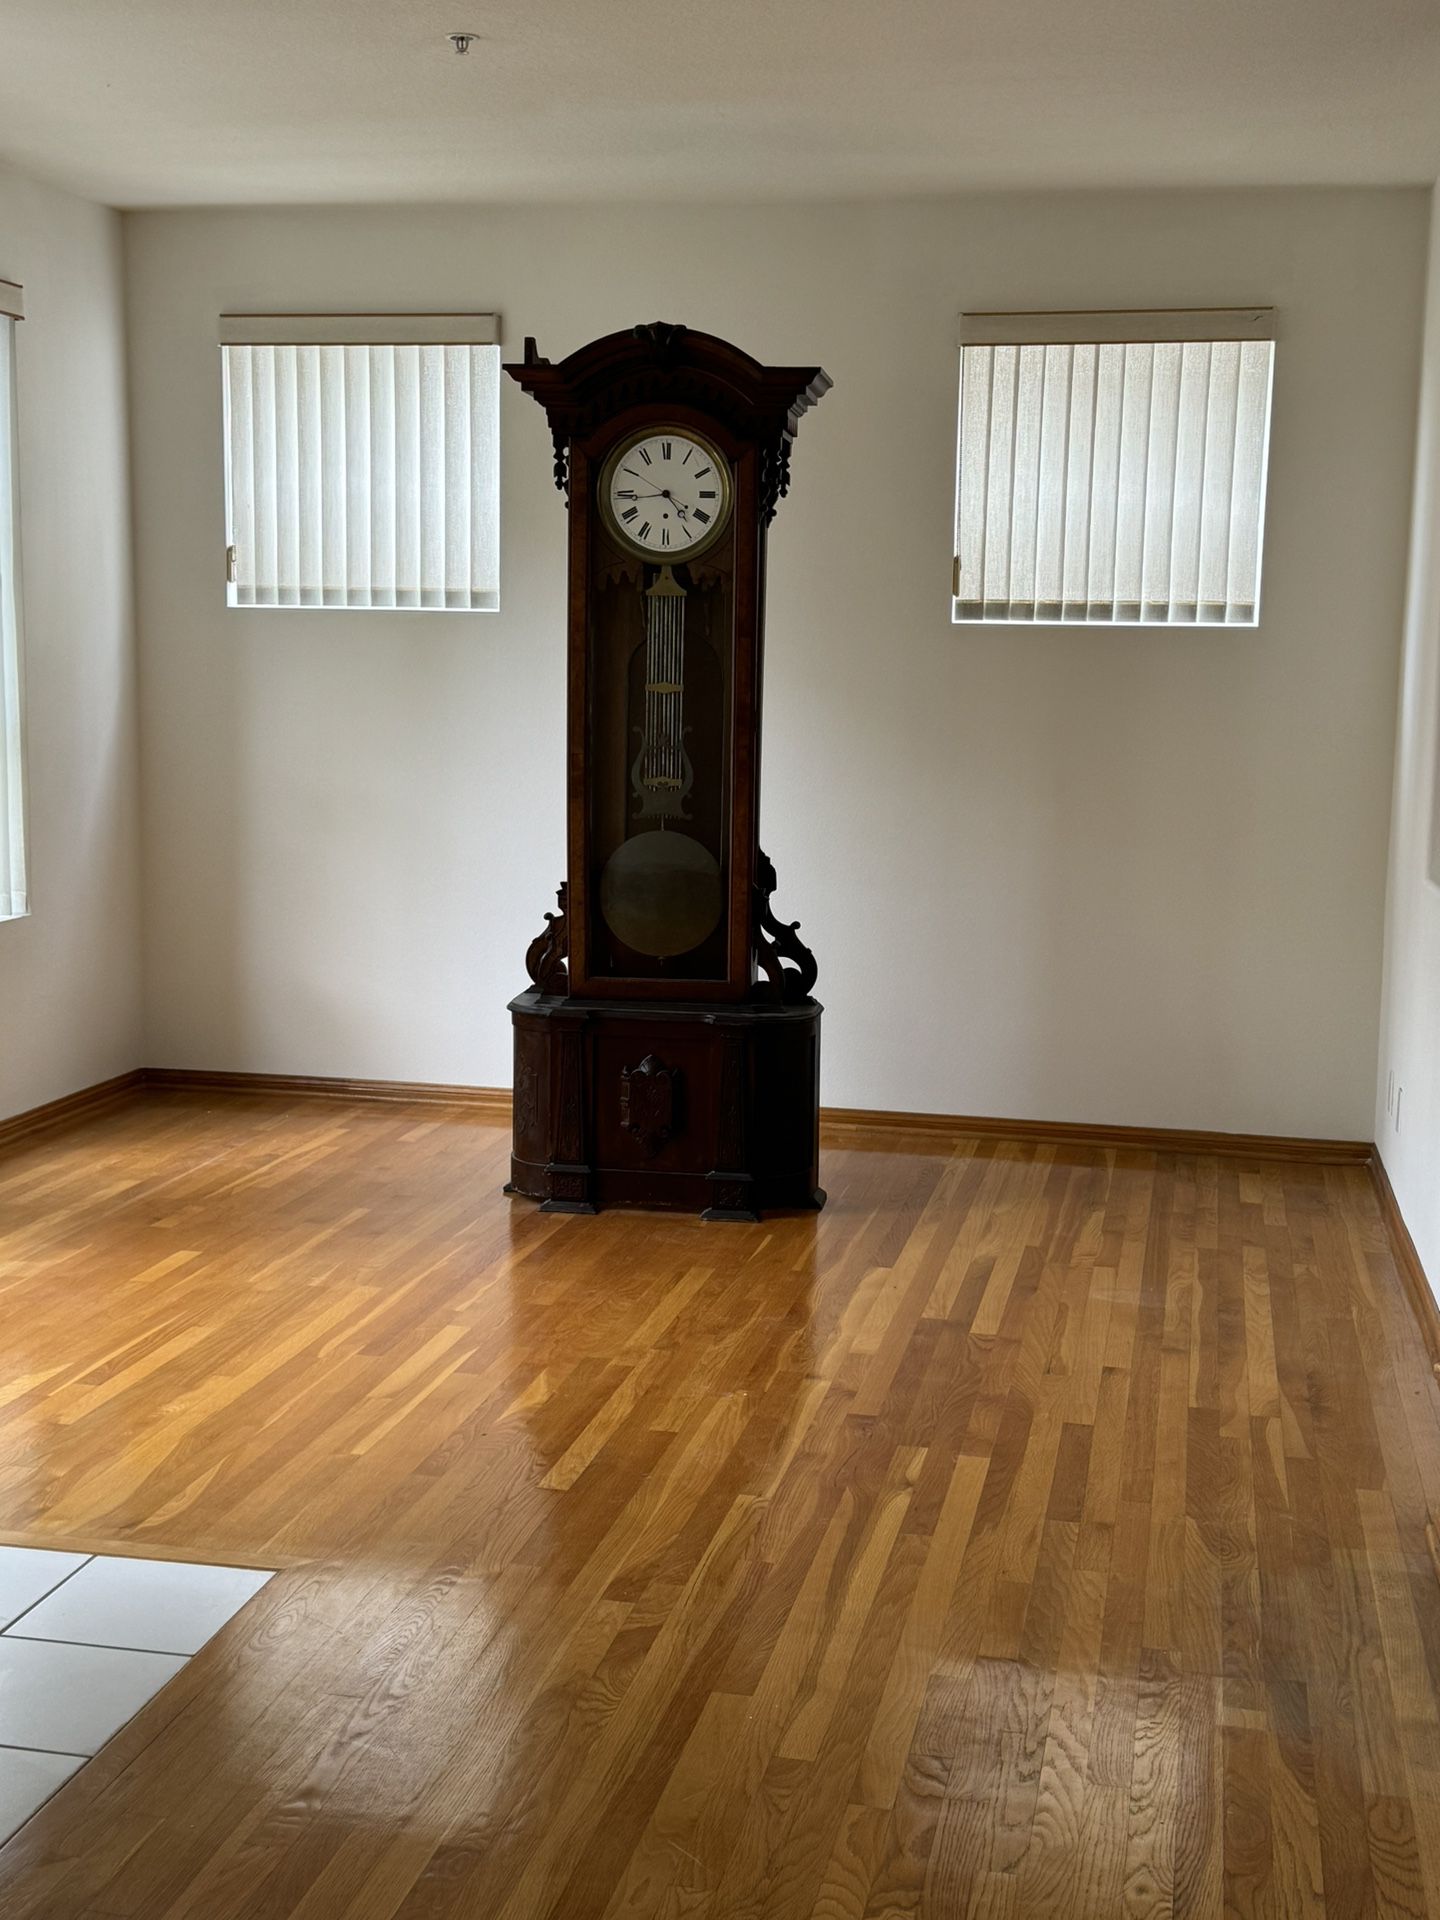 Antique Furniture Clock